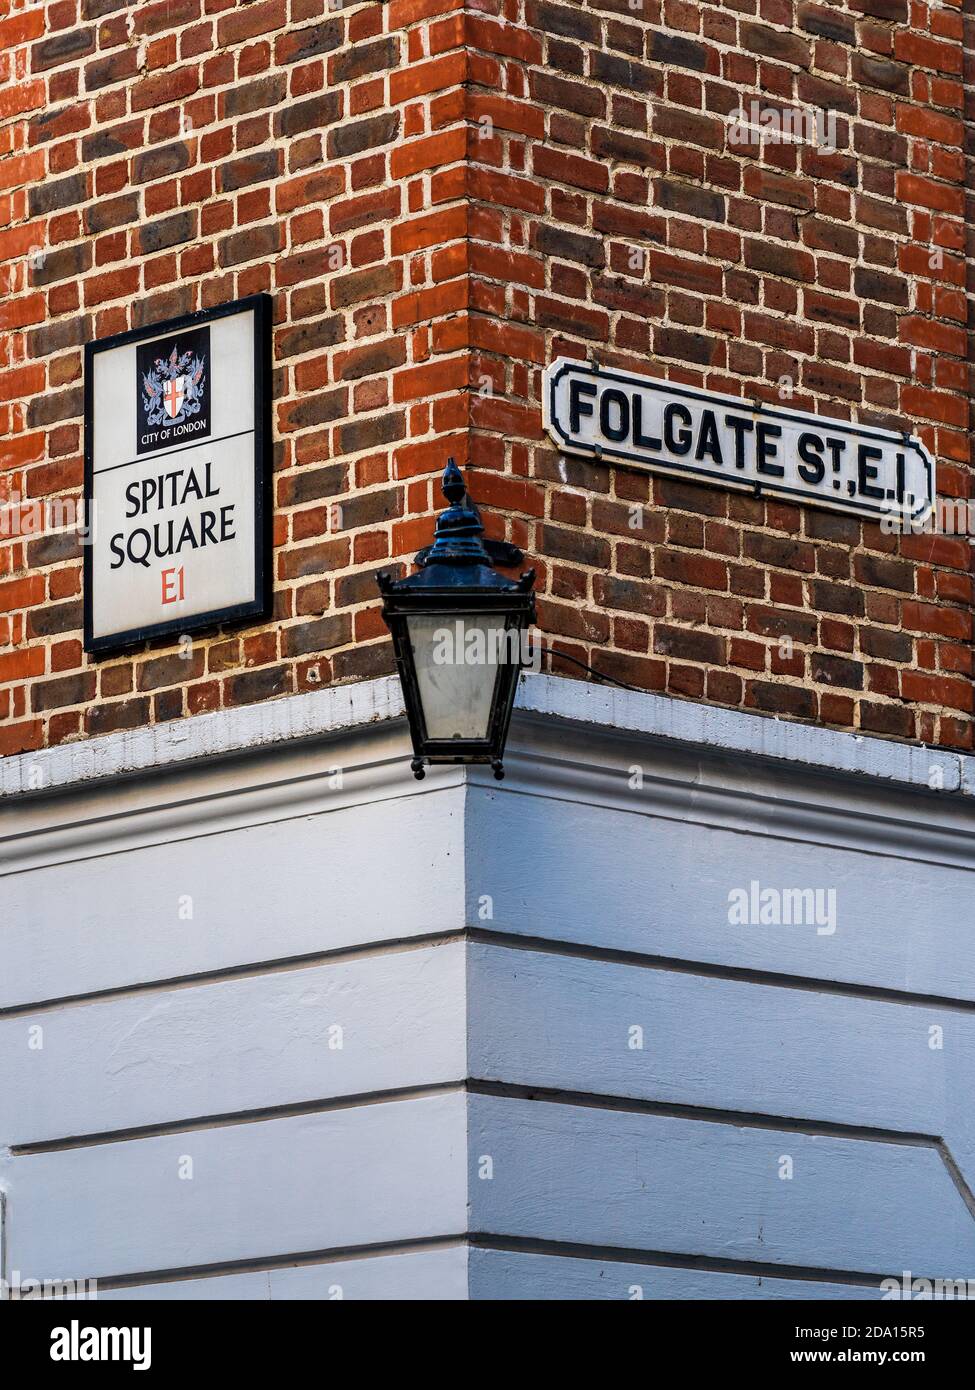 Angolo tra Spital Square e Folgate Street nella storica area di Spitalfields, a est di Londra. Foto Stock